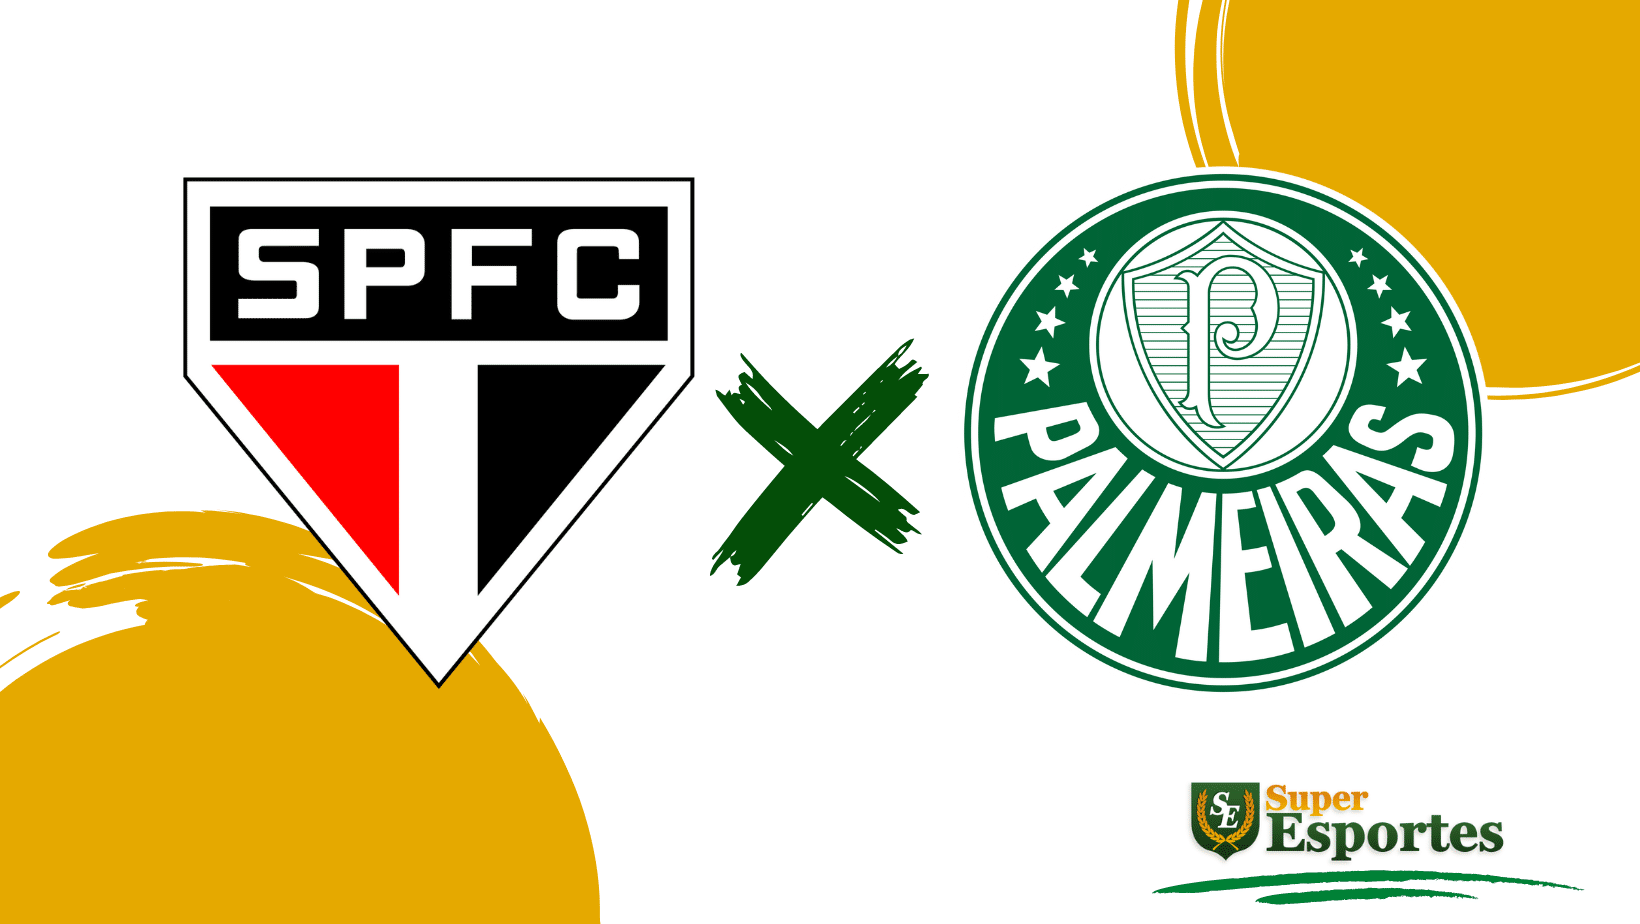 Próximos jogos do Palmeiras: data, horário e onde assistir